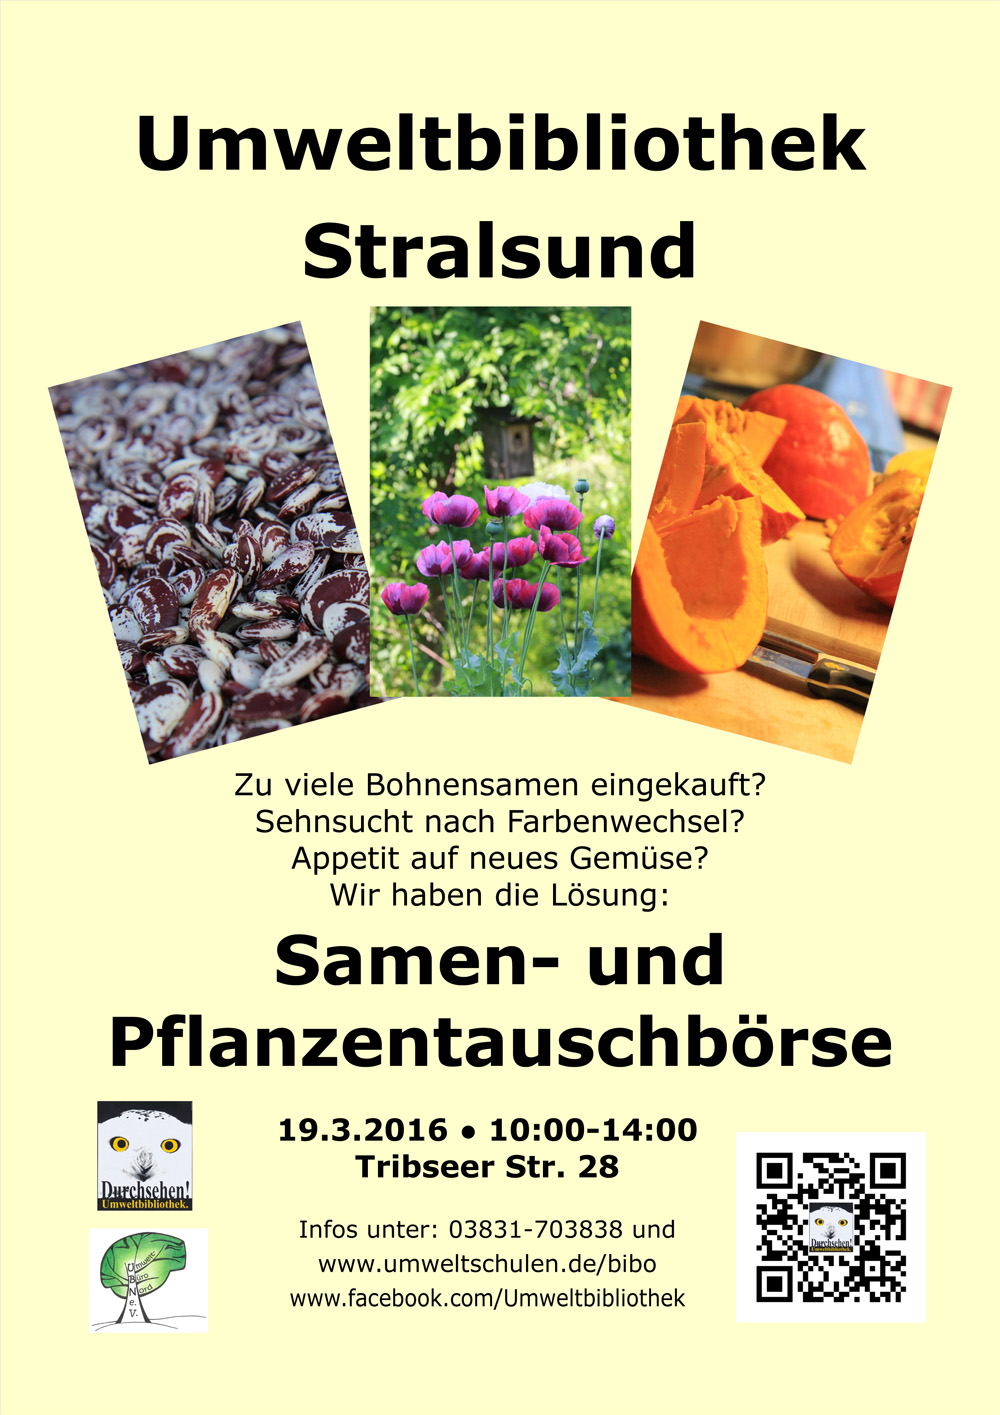 Das Foto zeigt ein Poster, das zur Samen- und Pflanzentauschbörse einlädt, welche am 19.4.2016 in der Umweltbibliothek Stralsund stattfindet. Blickfang des Posters sind drei Fotos. Sie zeigen Bohnensamen, eine Gartenidylle mit Mohnblumen und einem Nistkasten sowie leckeren Kürbis in einer Küche.